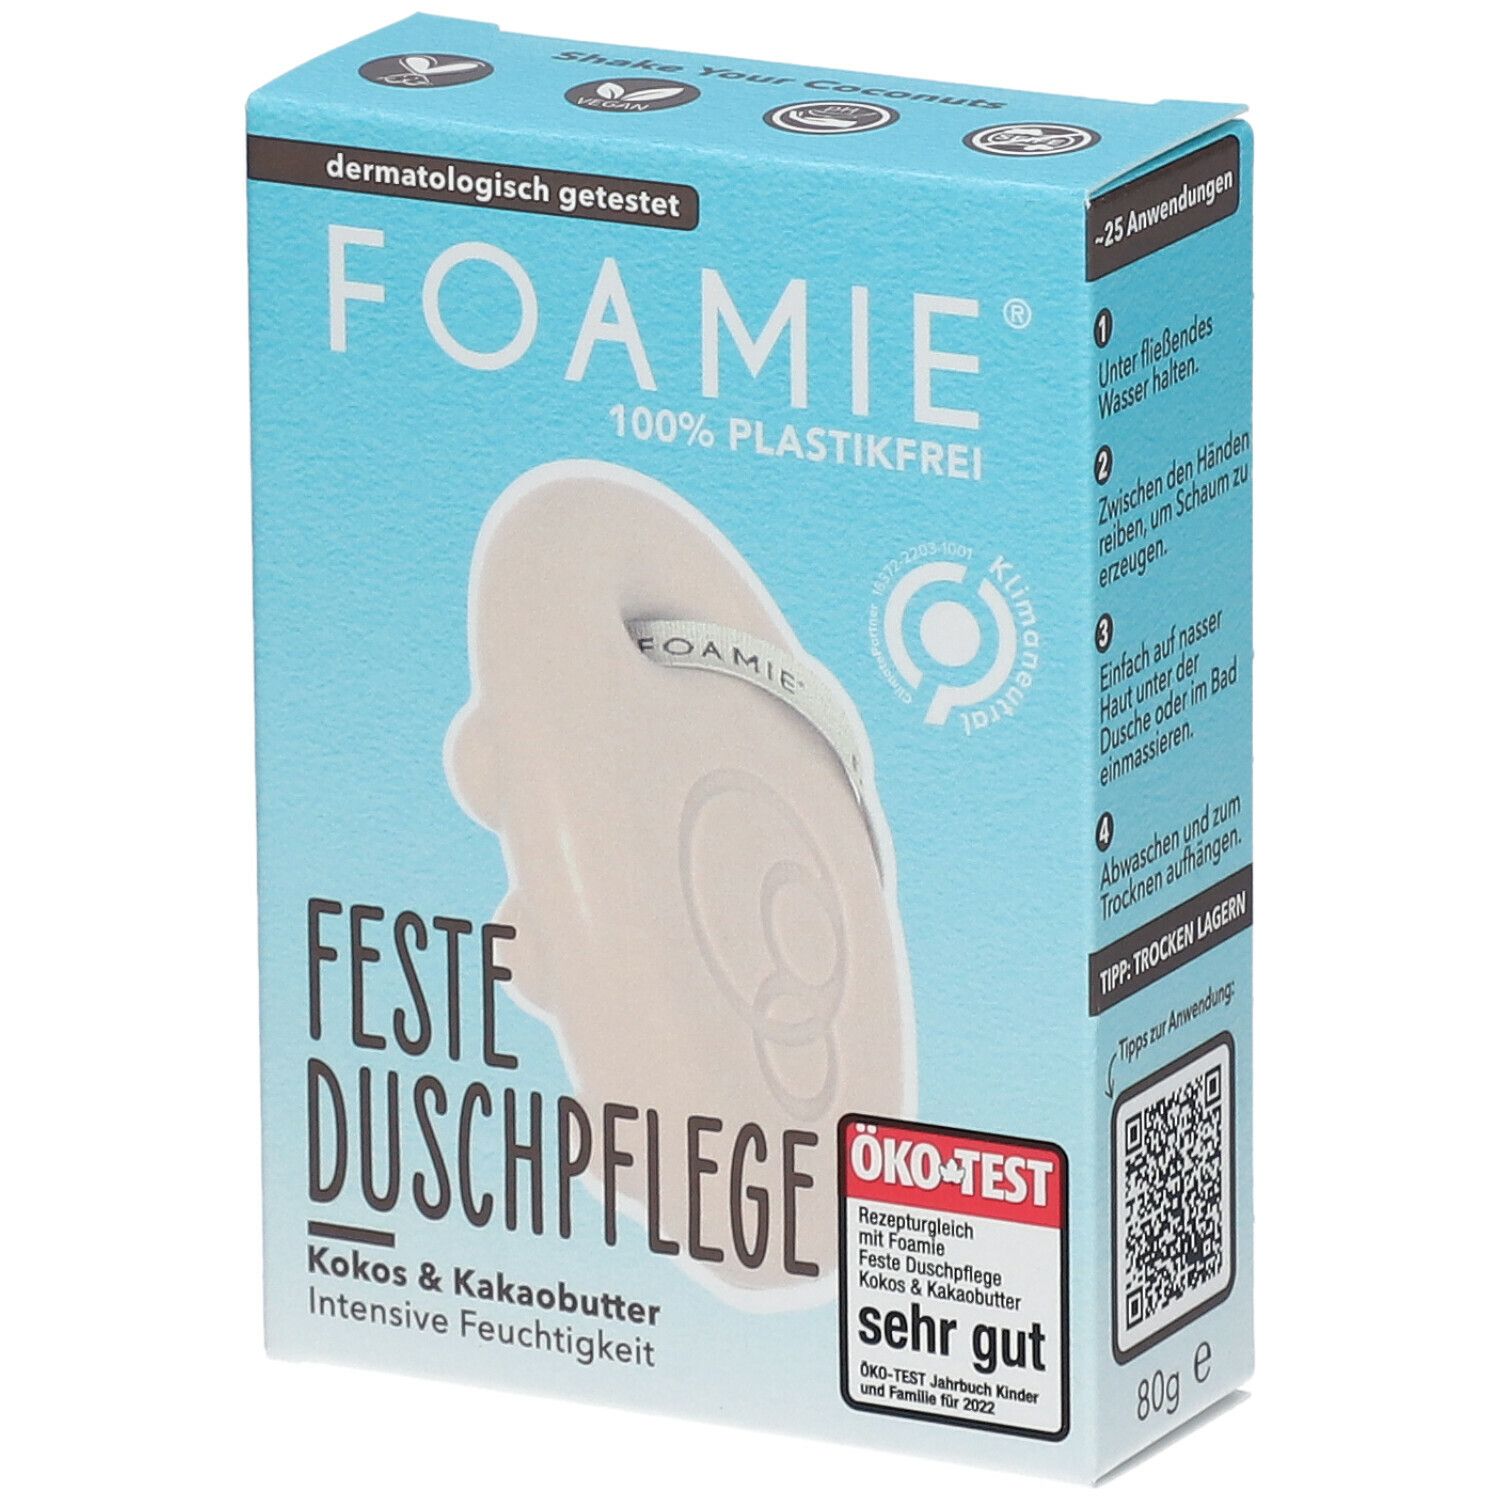 Image of FOAMIE® Feste Duschpflege Kokosnussöl